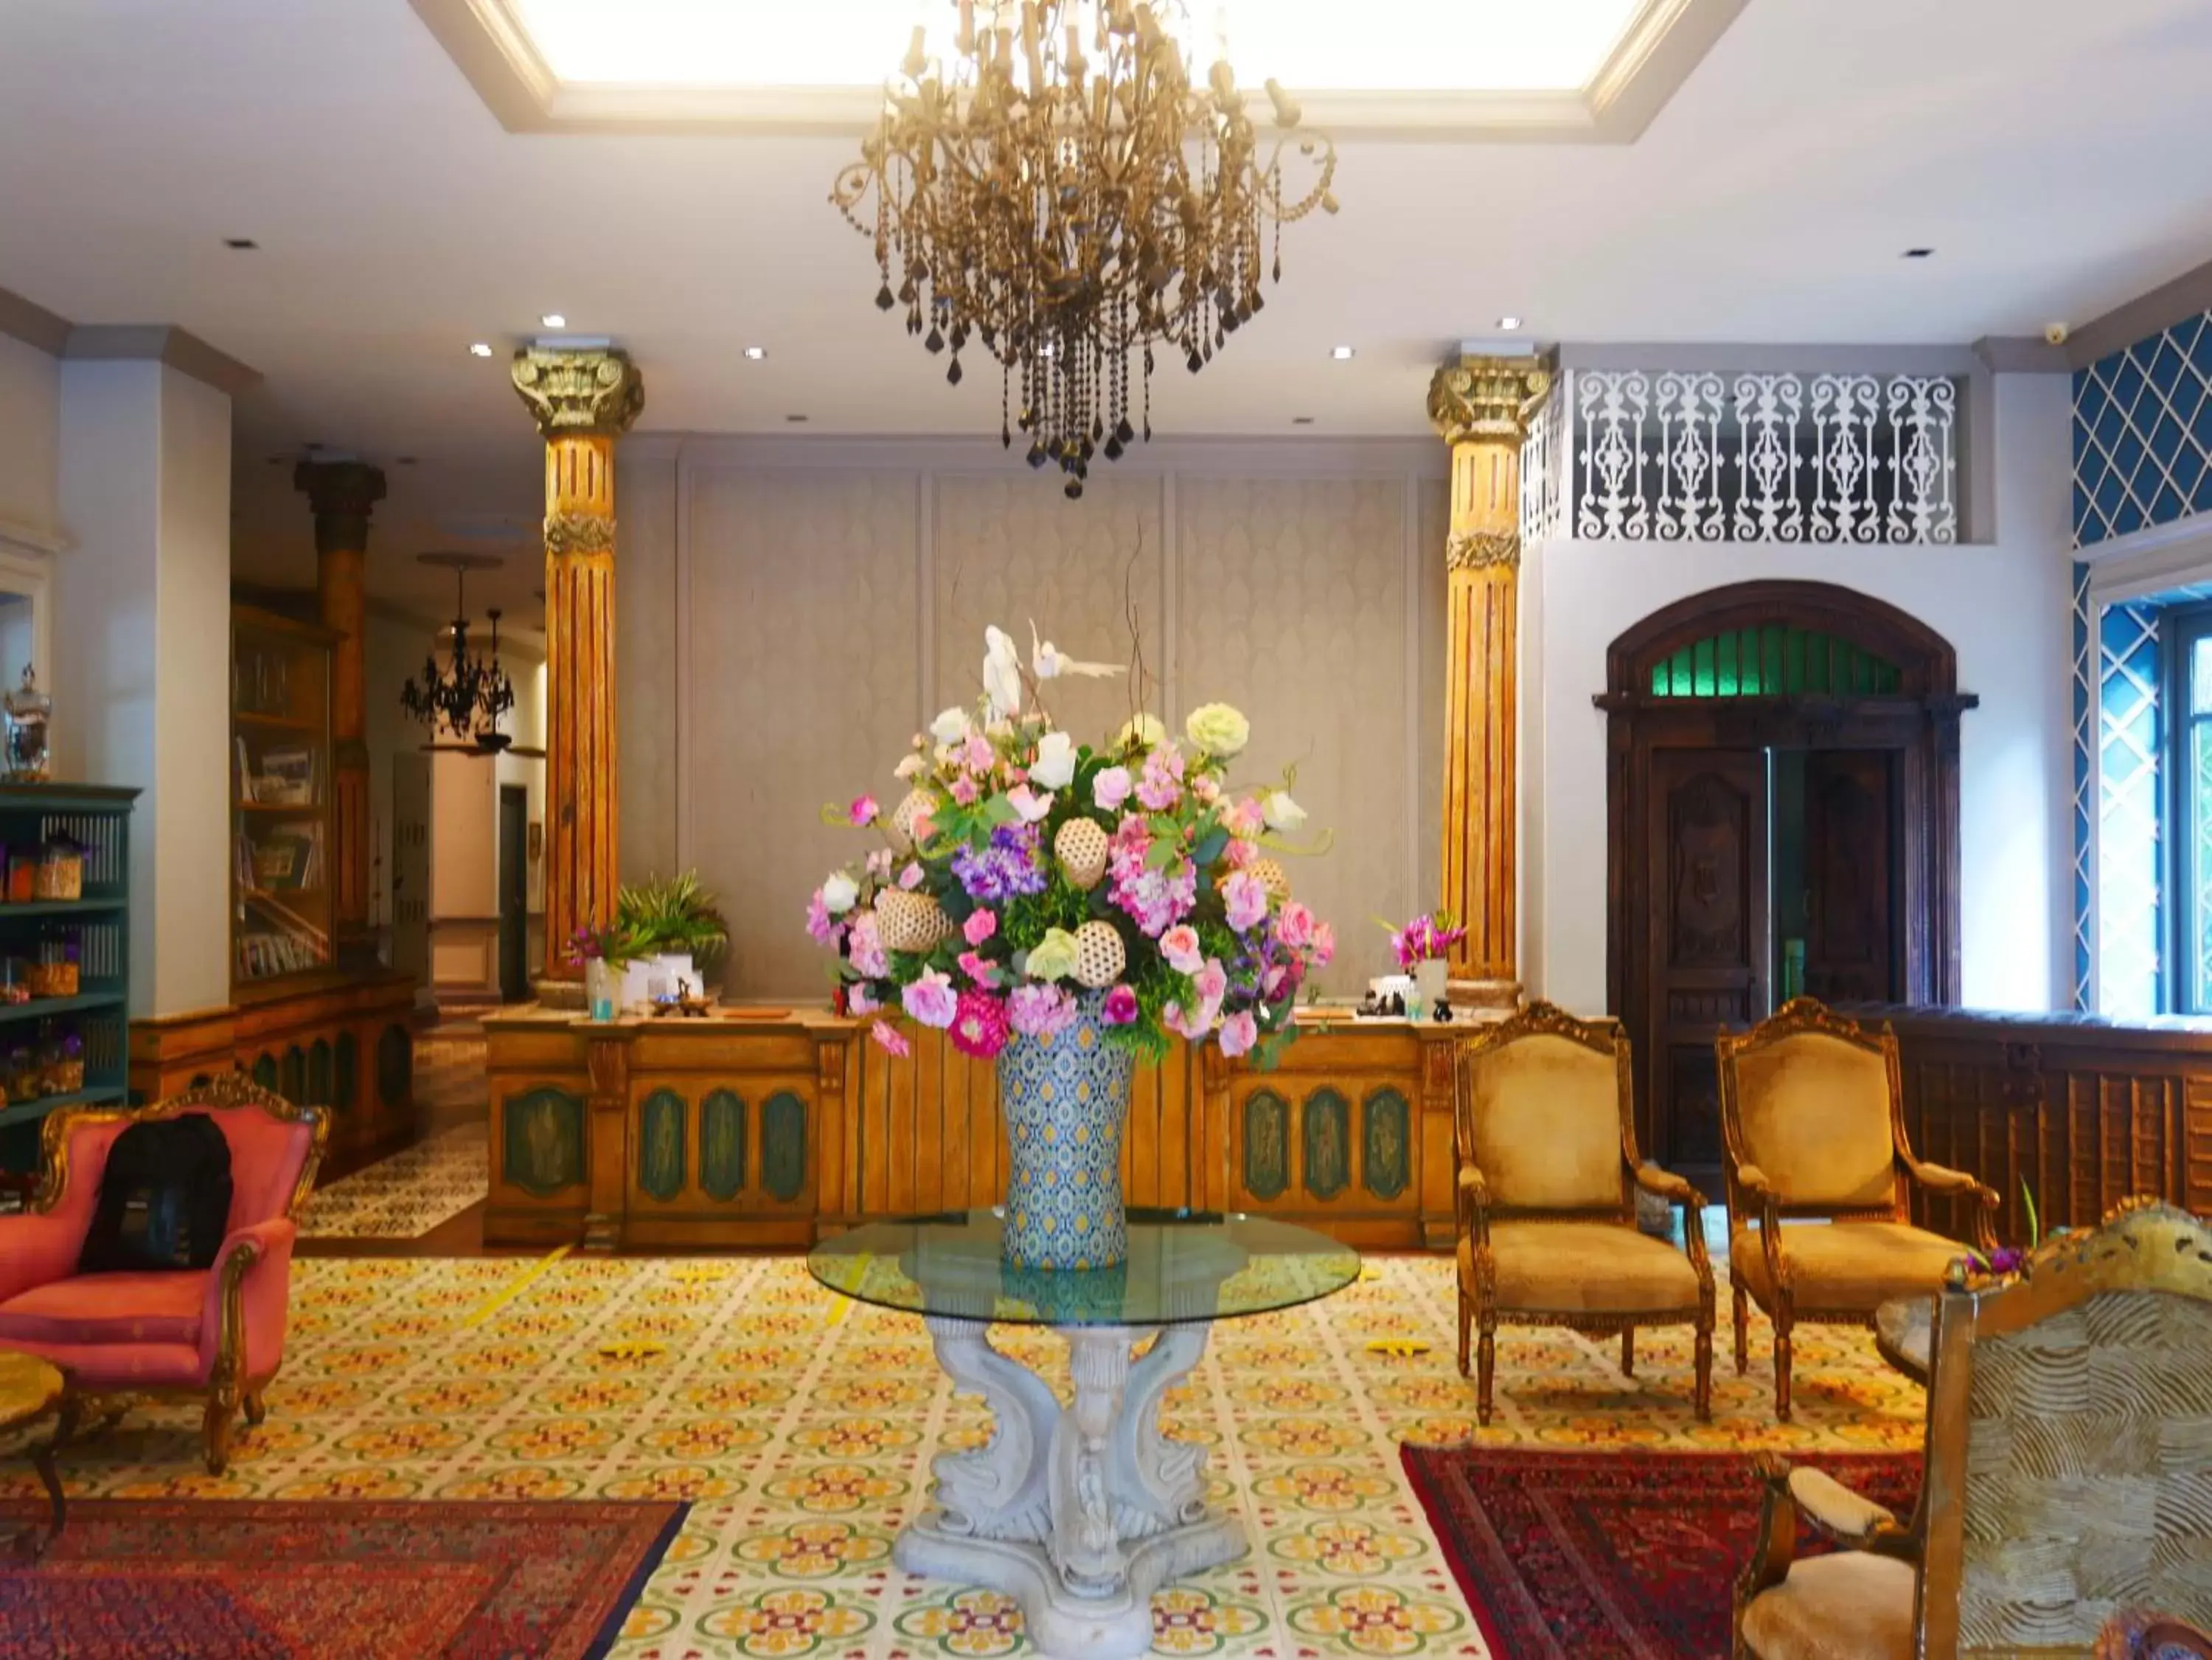 Lobby or reception, Lobby/Reception in At Pingnakorn Huaykaew